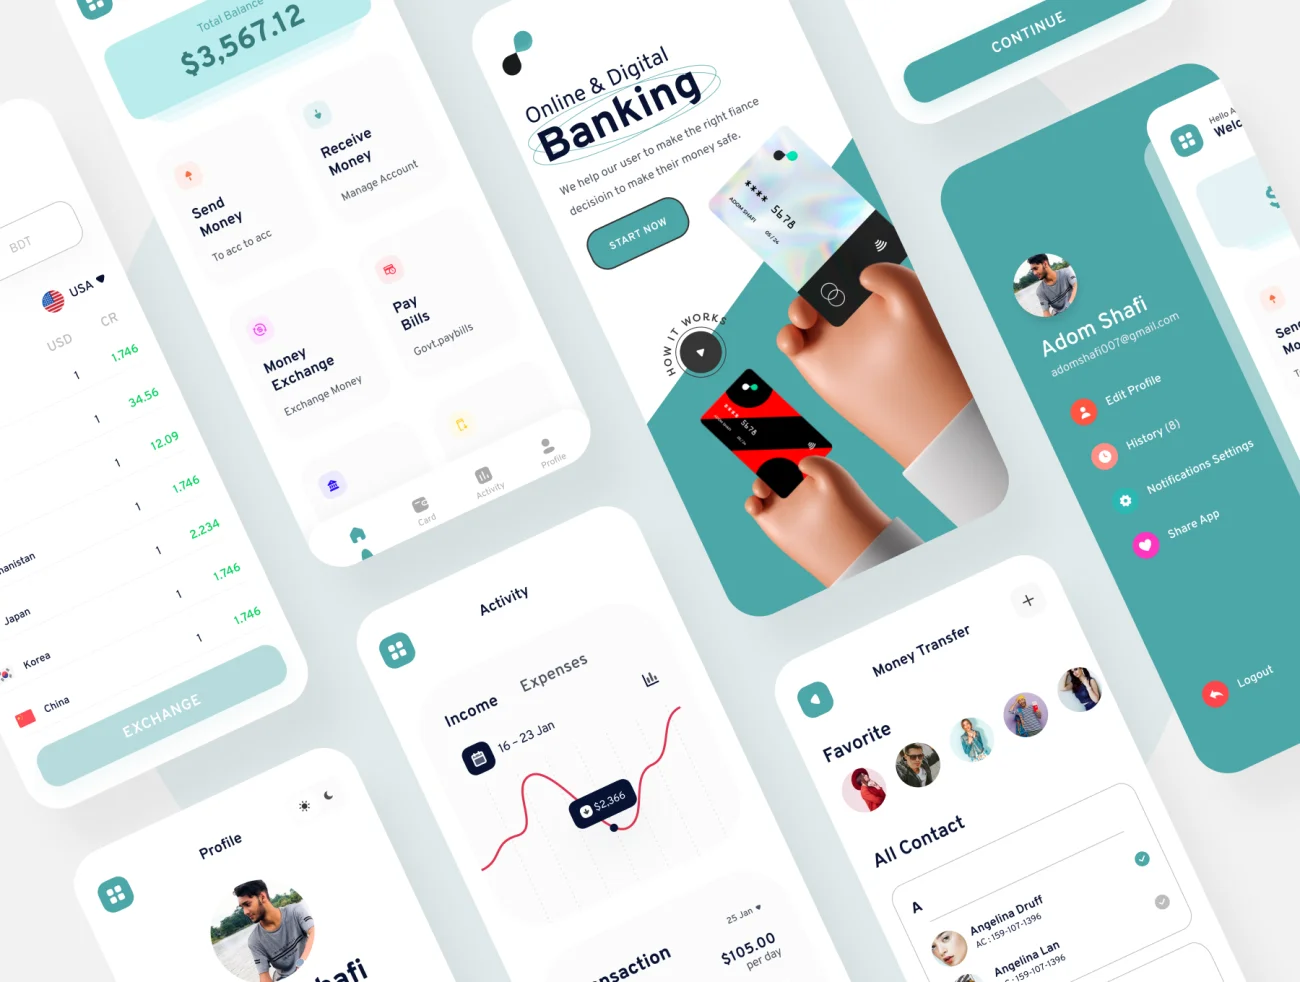 90屏手机银行金融理财电子钱包应用UI设计套件 Bankboo Mobile Banding App Kit插图11